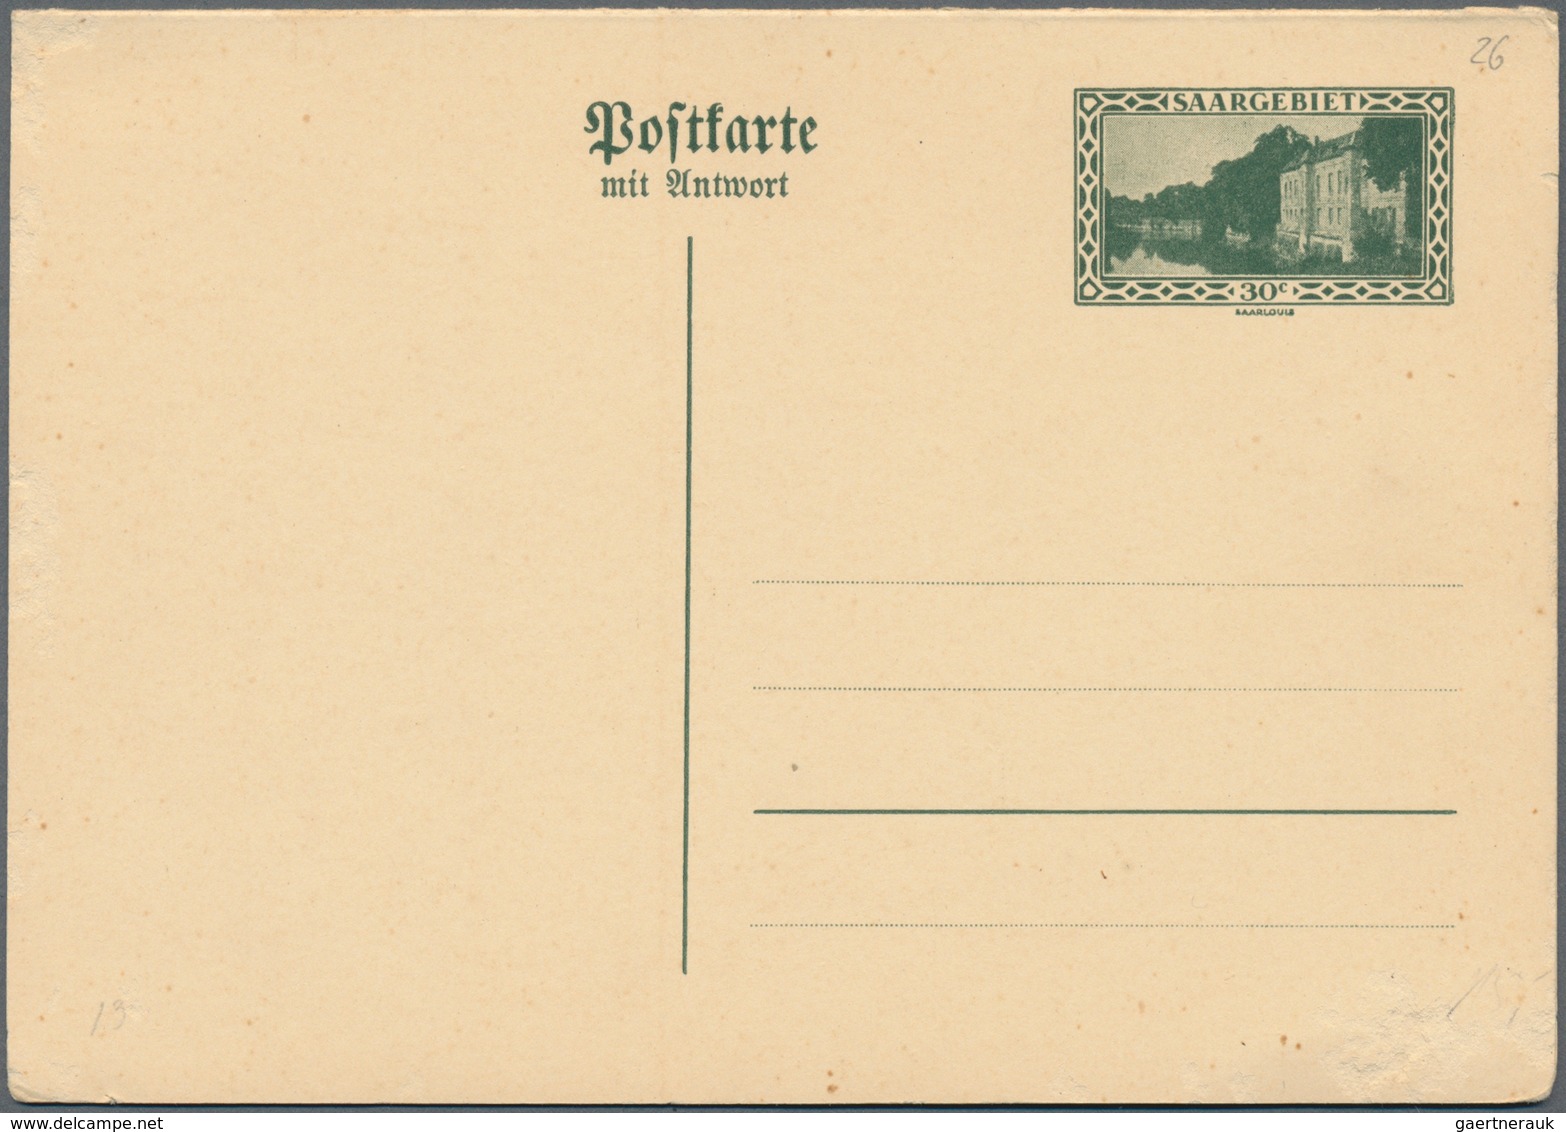 Deutsche Abstimmungsgebiete: Saargebiet: 1920-35, 380 Belege in 4 Alben, dabei frankierte Postanweis